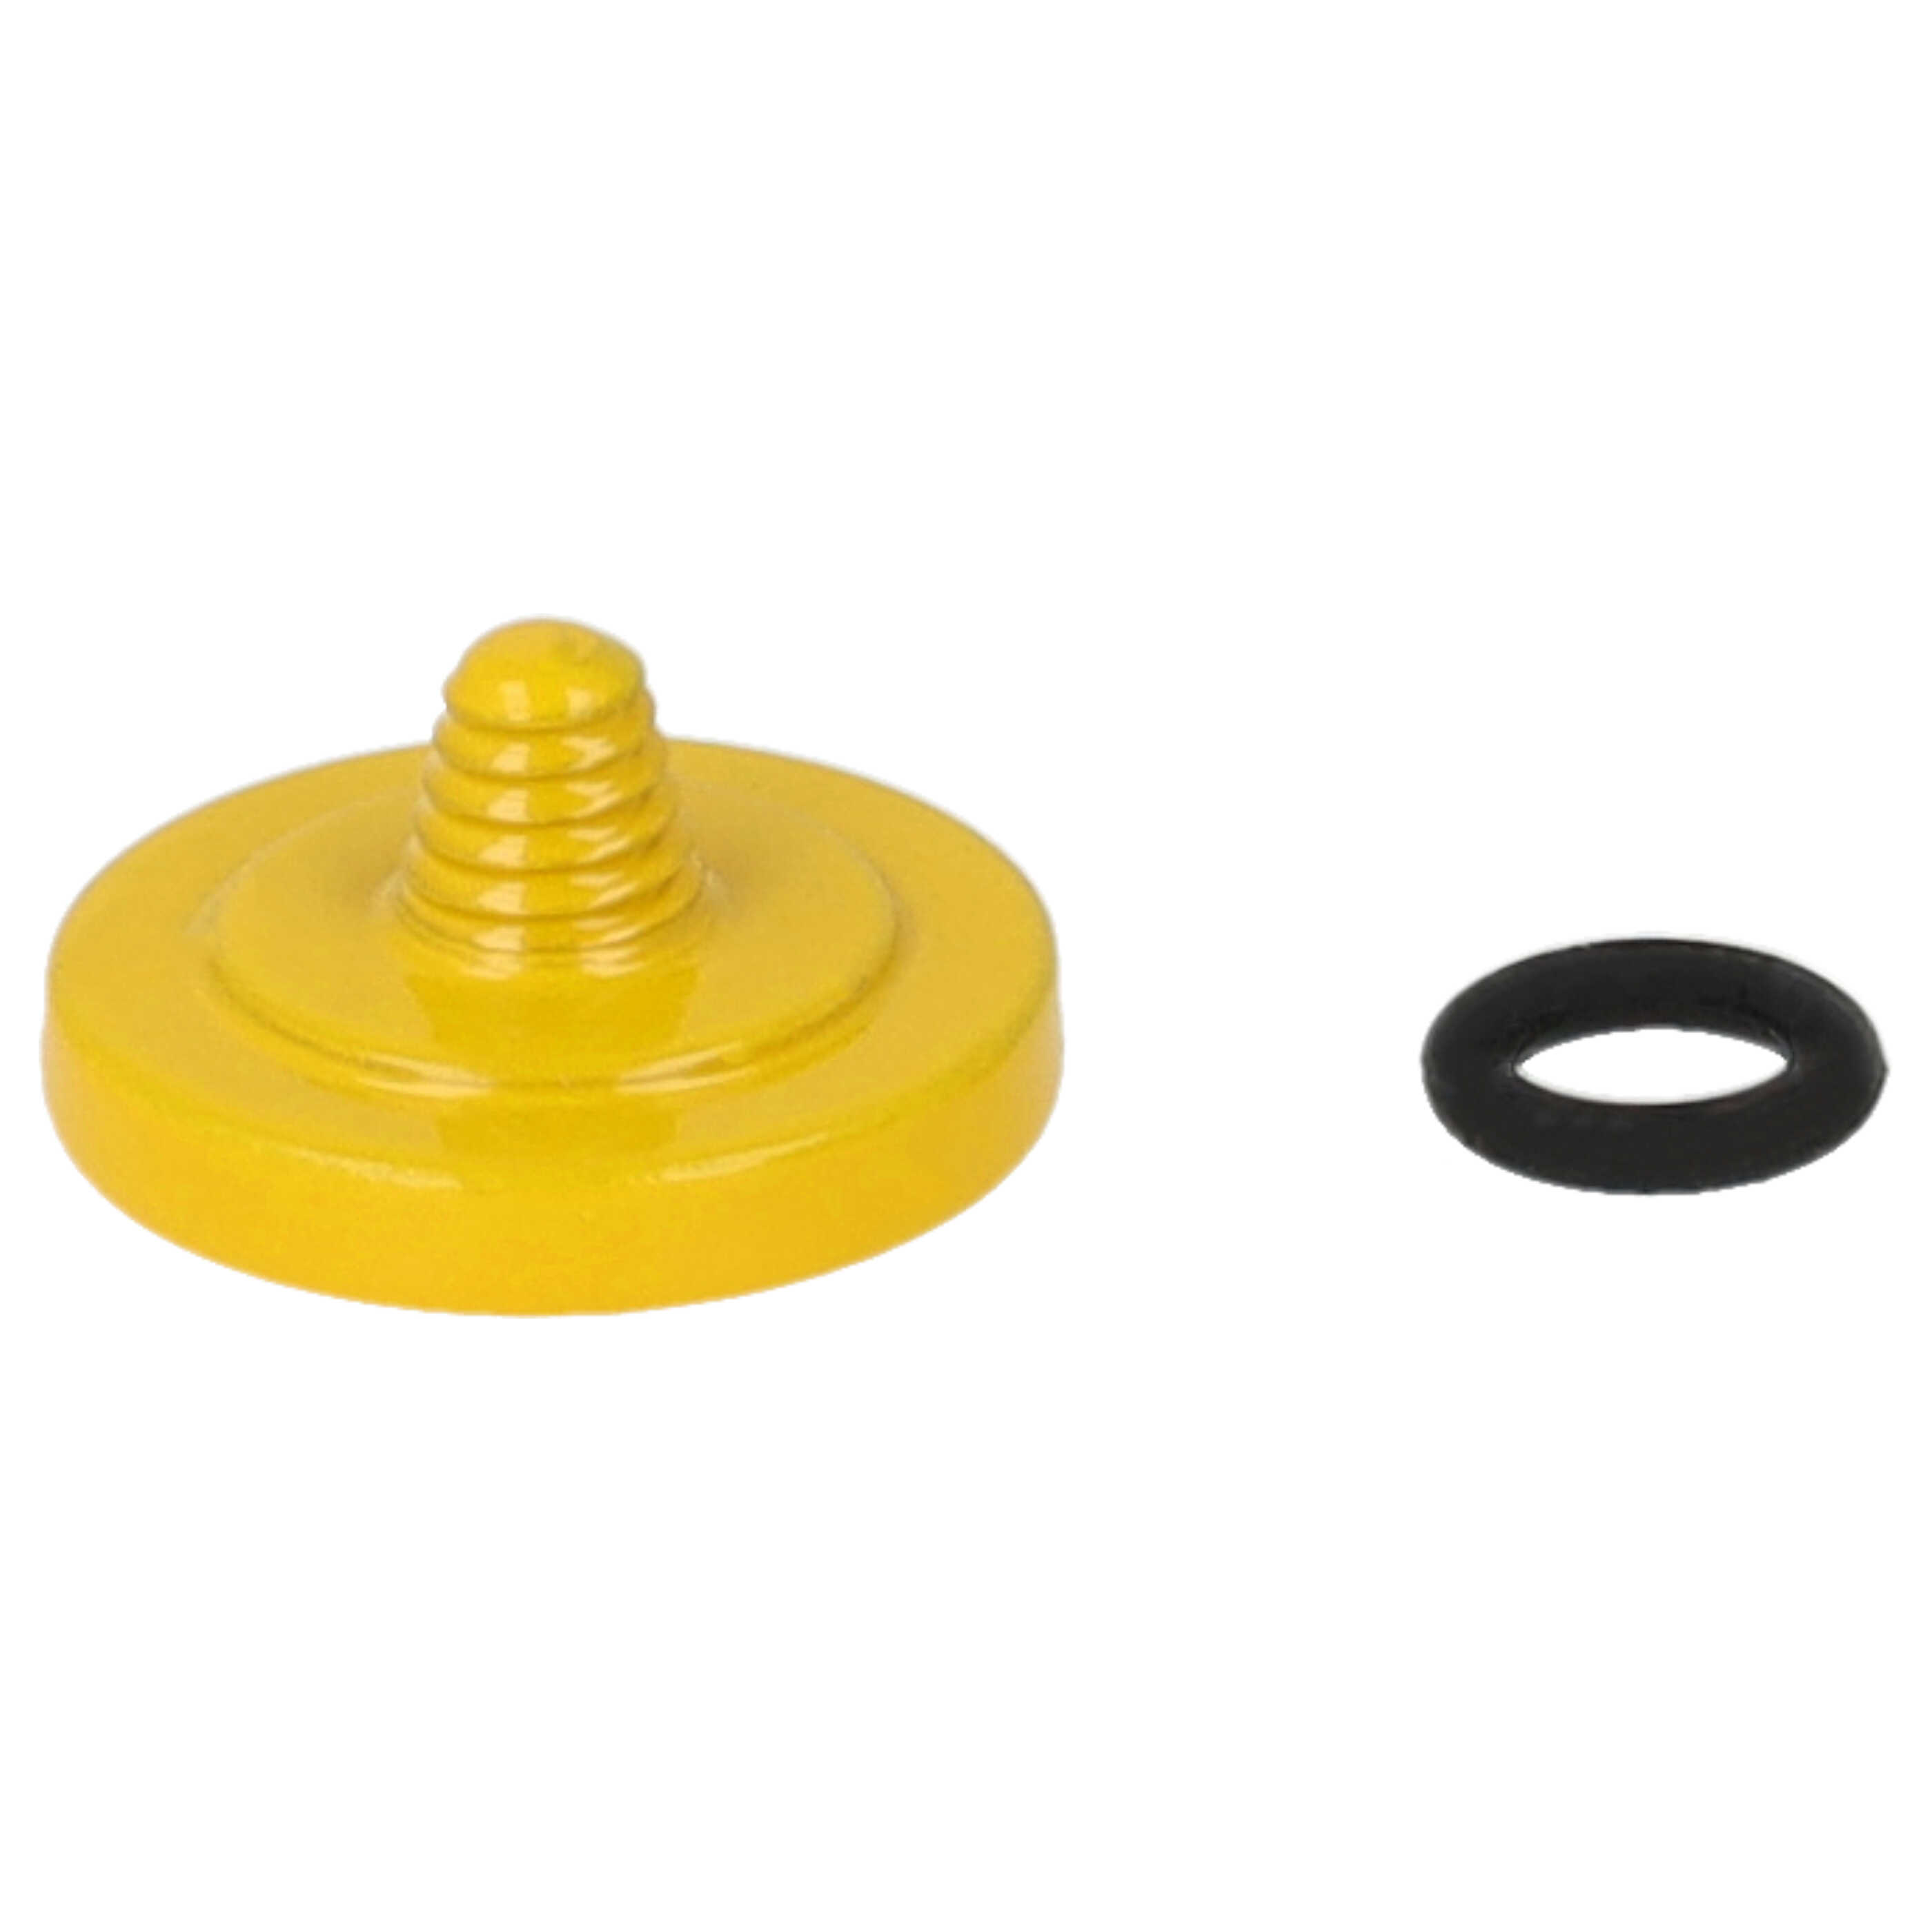 Release Button suitable for X-E1 FujifilmCamera etc. - Metal, Yellow